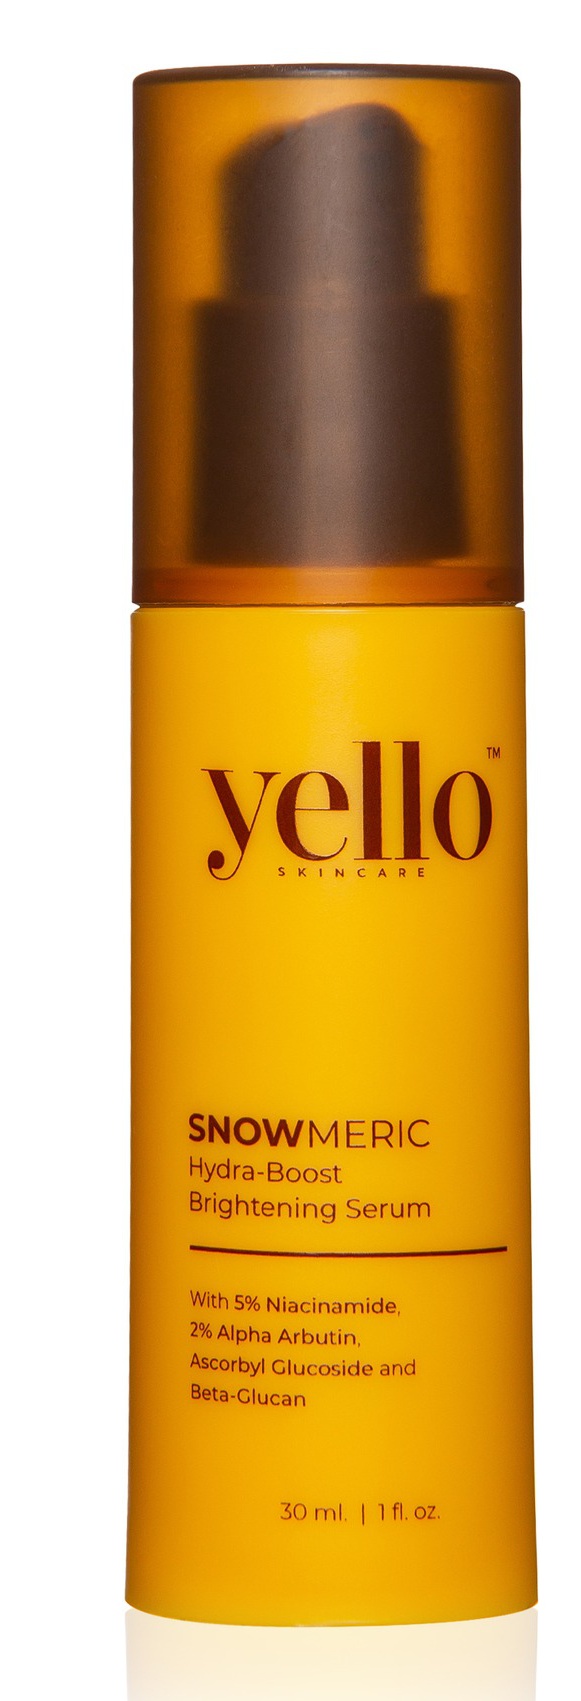 Yello Skincare Snowmeric Hydra-Boost Brightening Serum